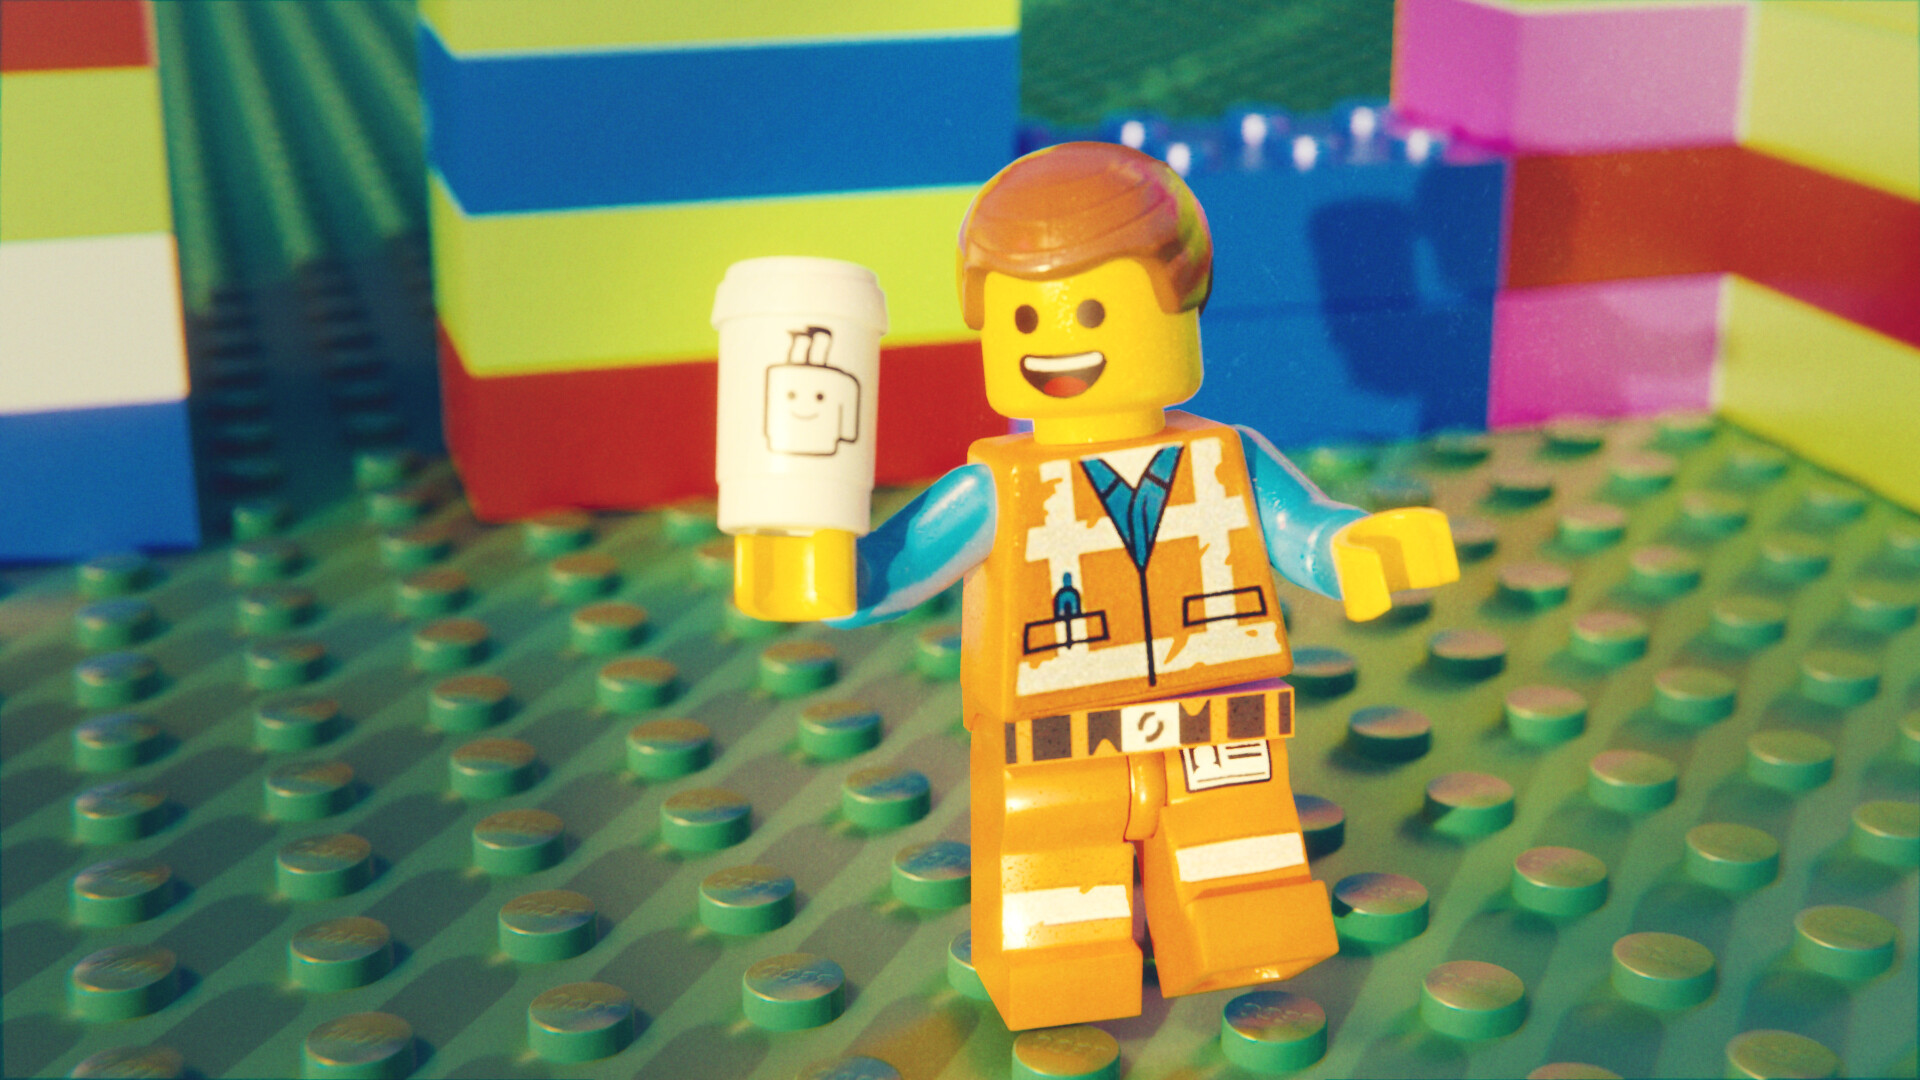 ArtStation The Lego Movie Emmet Brickowski